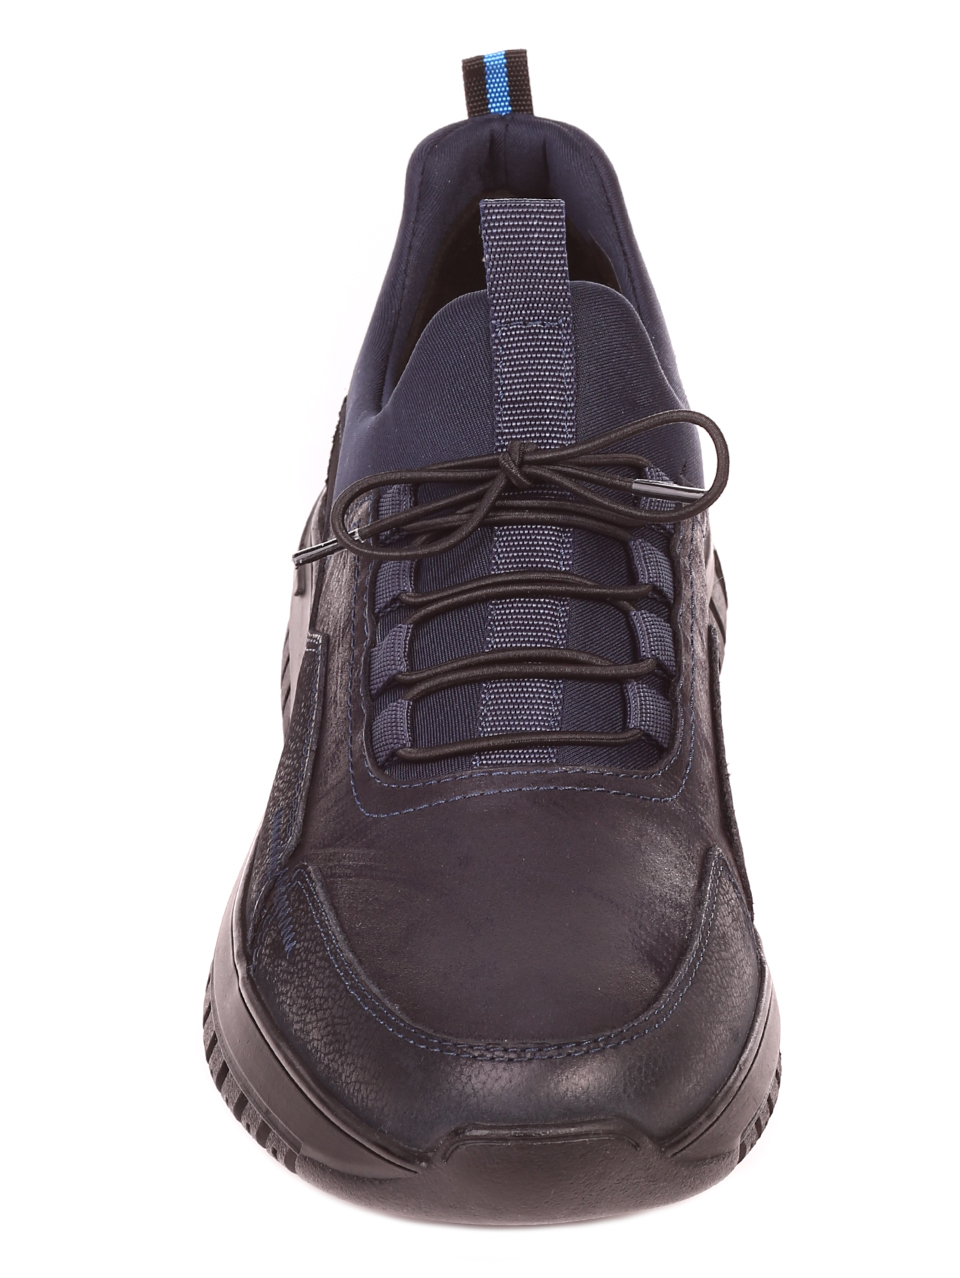 Ежедневни мъжки обувки от естествена кожа и естествен набук 7AT-21870 navy